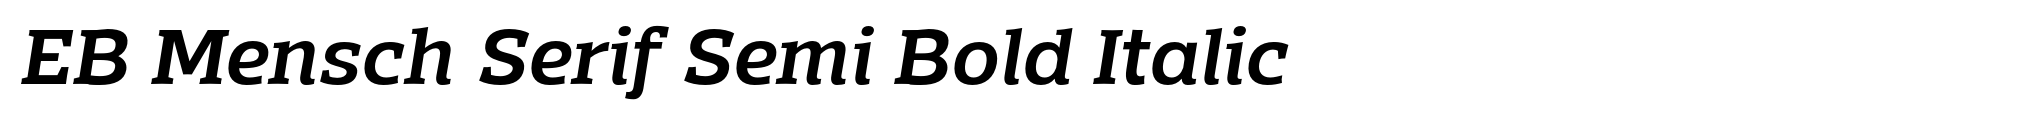 EB Mensch Serif Semi Bold Italic image